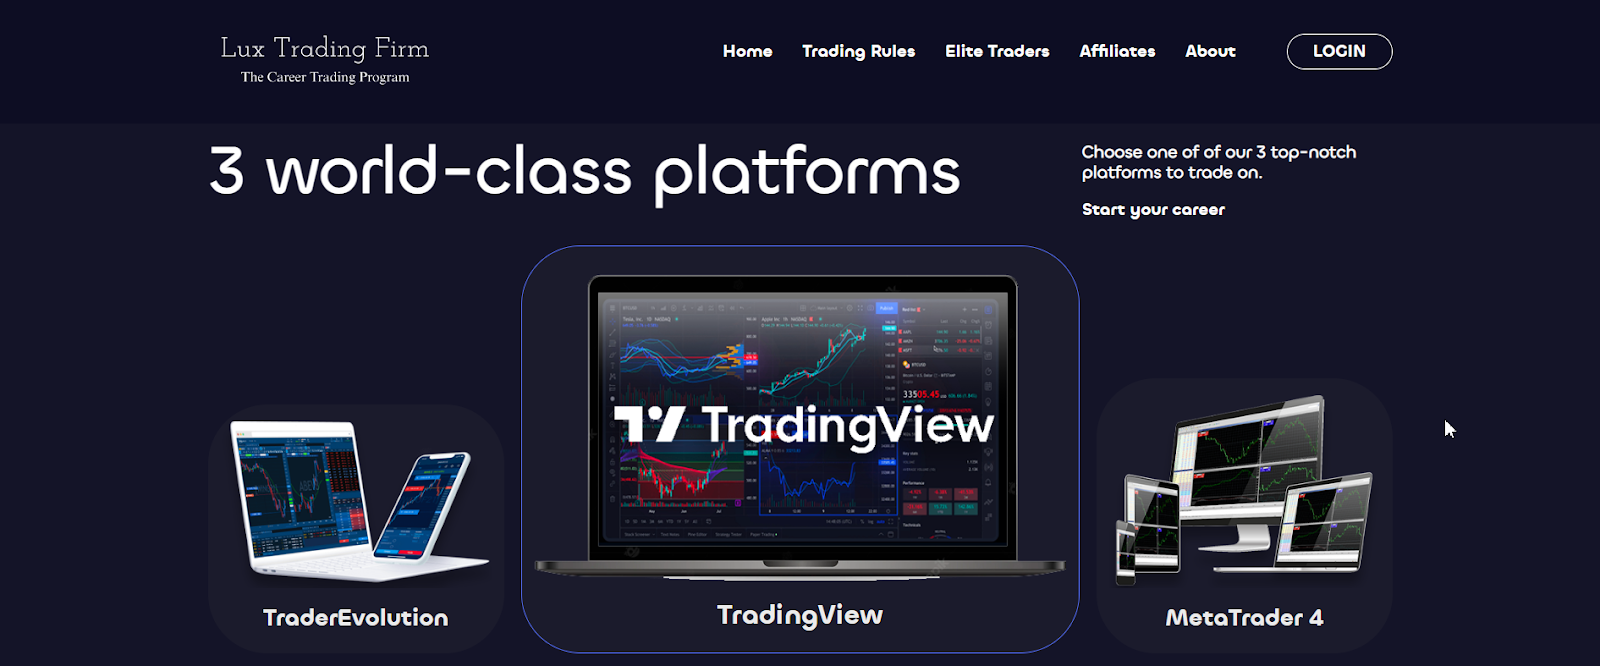 Lux Trading Firm İncelemesi - Bir işlem platformu seçin